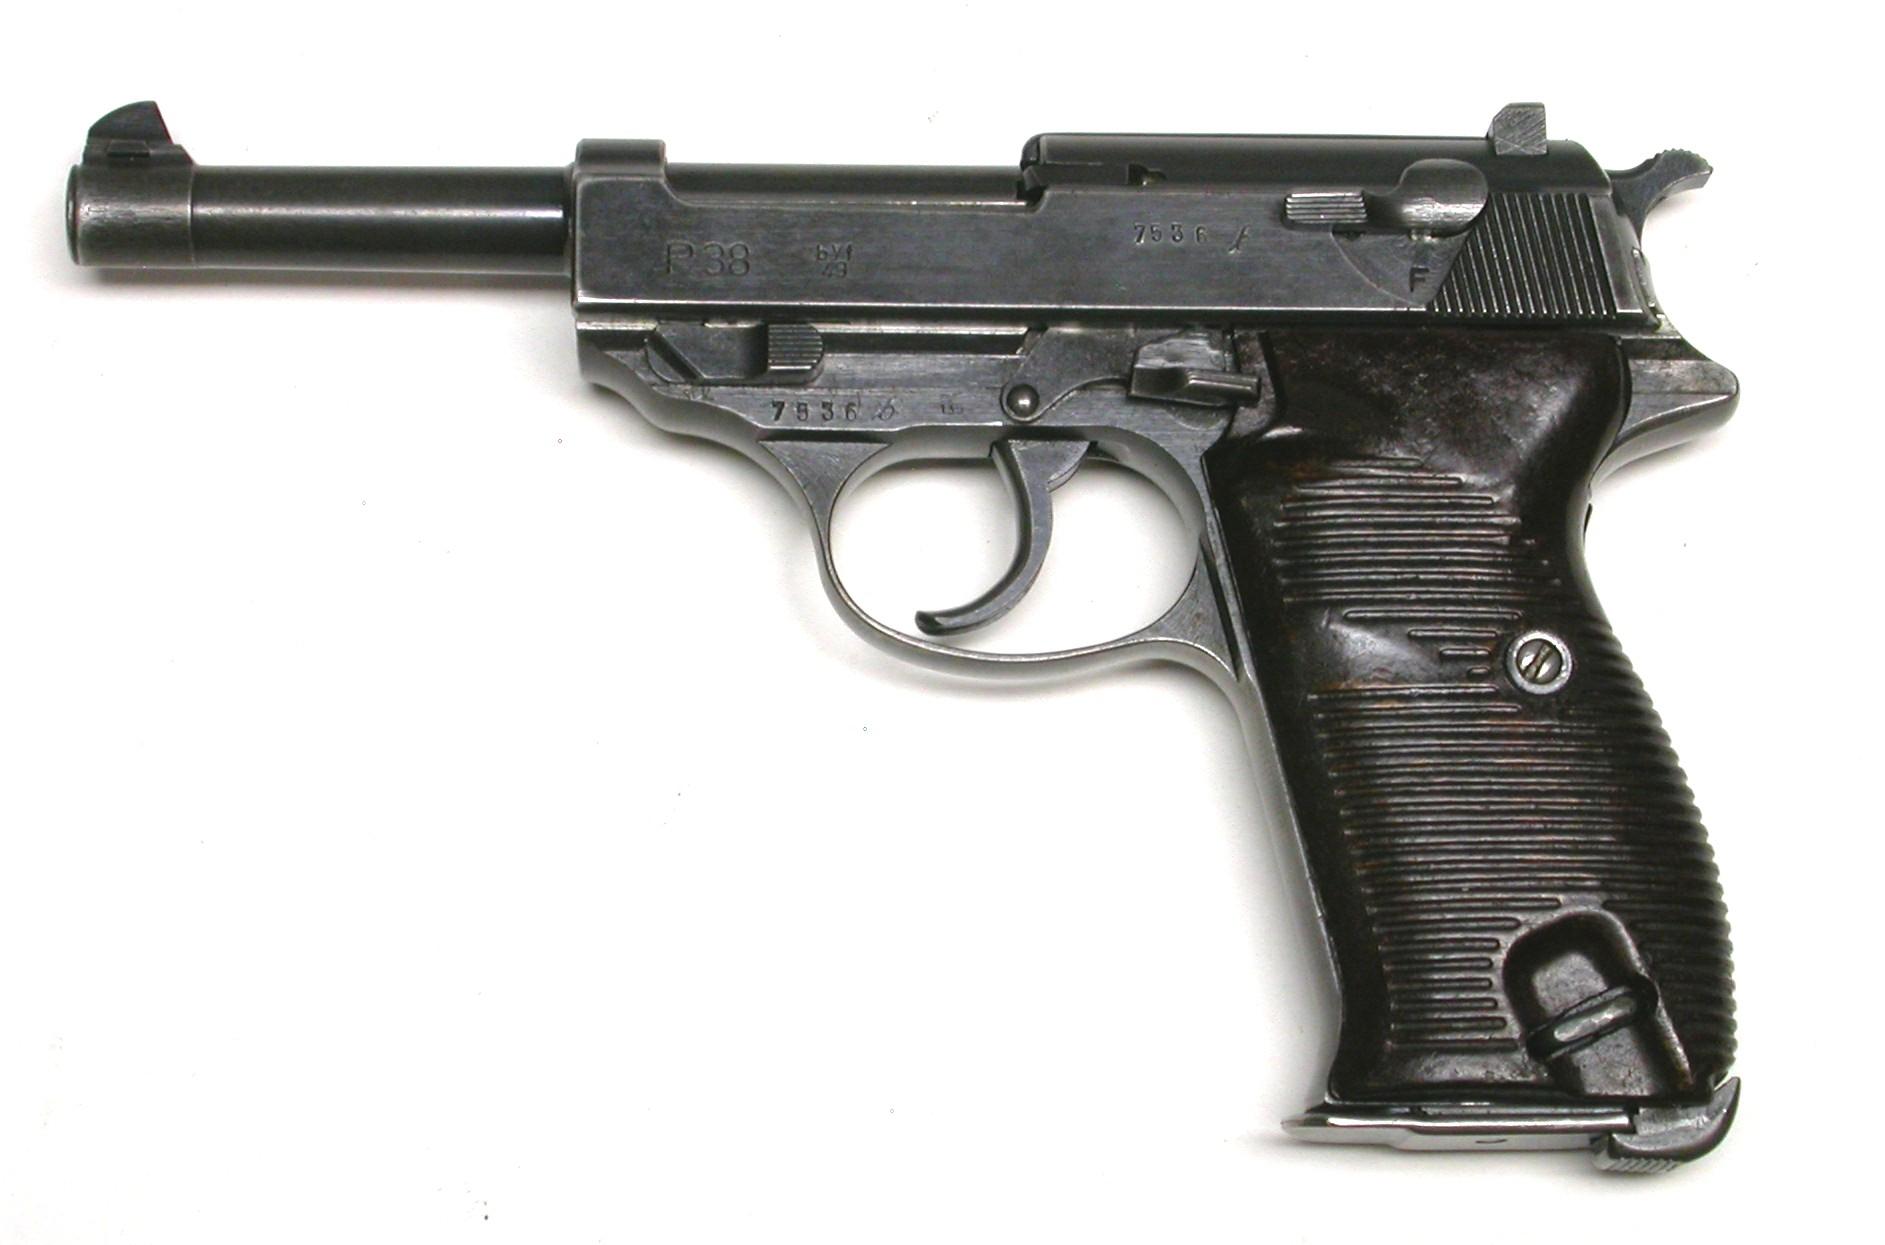 German Military WWII Mauser P38 9mm Semi-Automatic Pistol - FFL #7536b (CYM)